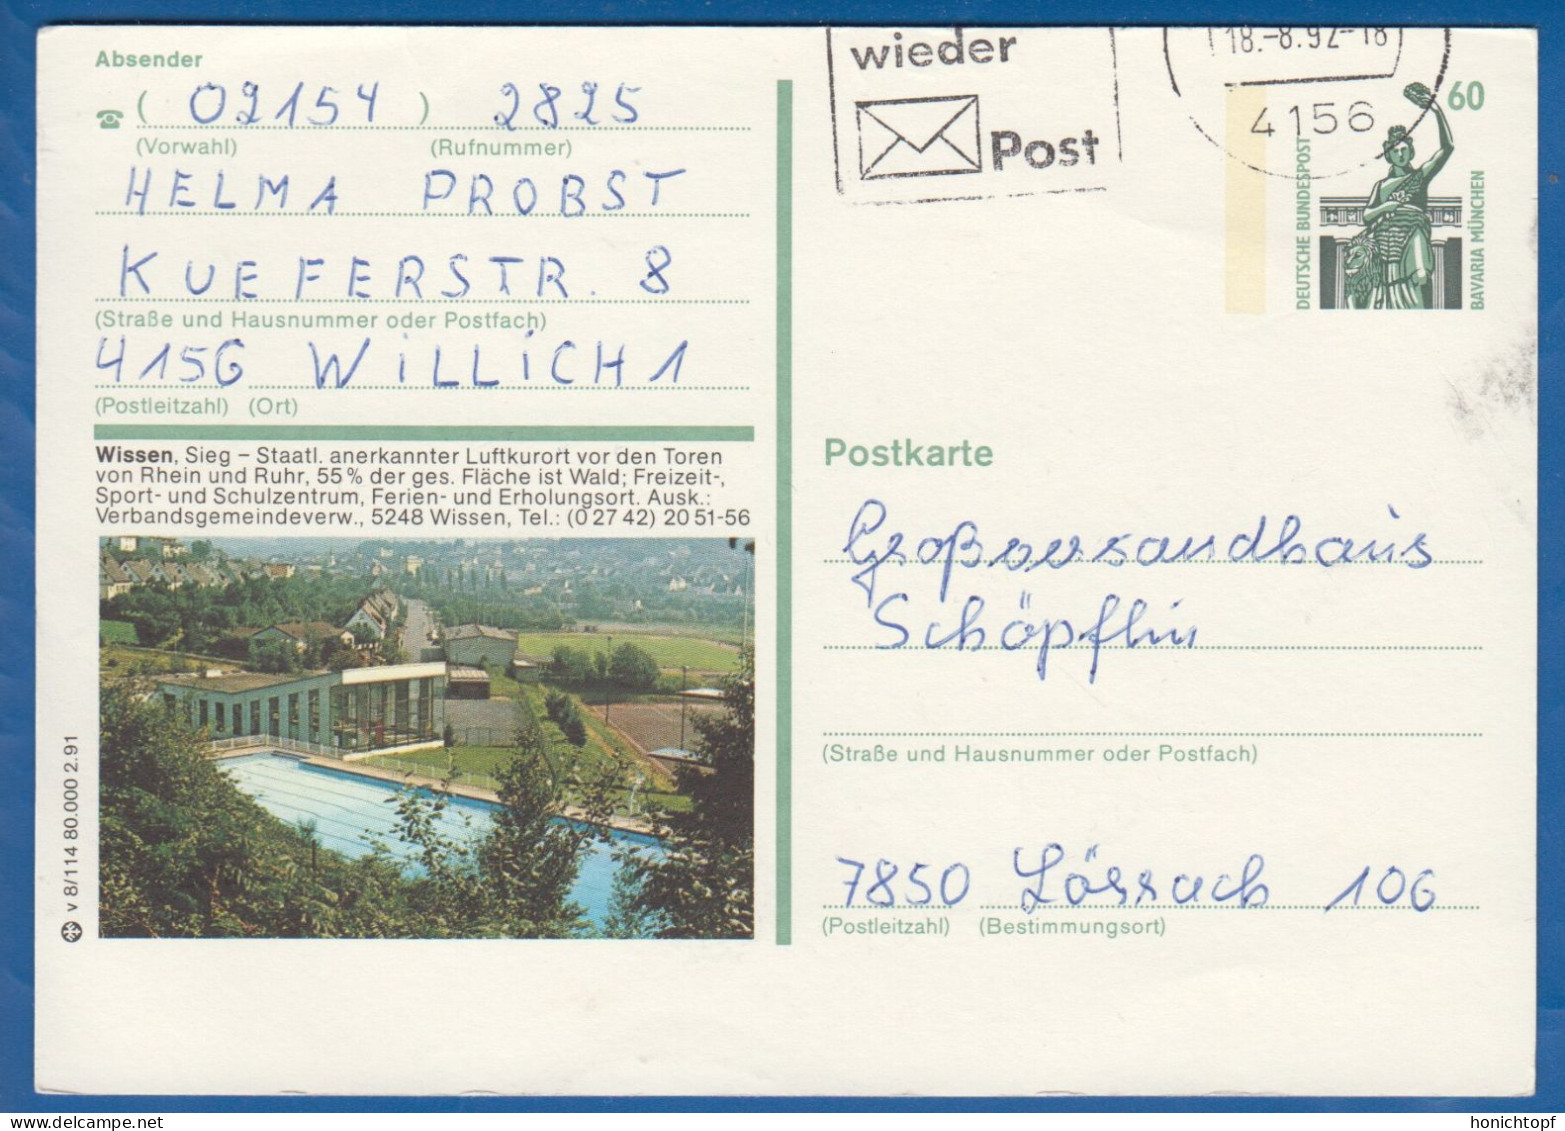 Deutschland; BRD; Postkarte; 60 Pf Bavaria München; Wissen, Sieg; Bild1 - Illustrated Postcards - Used